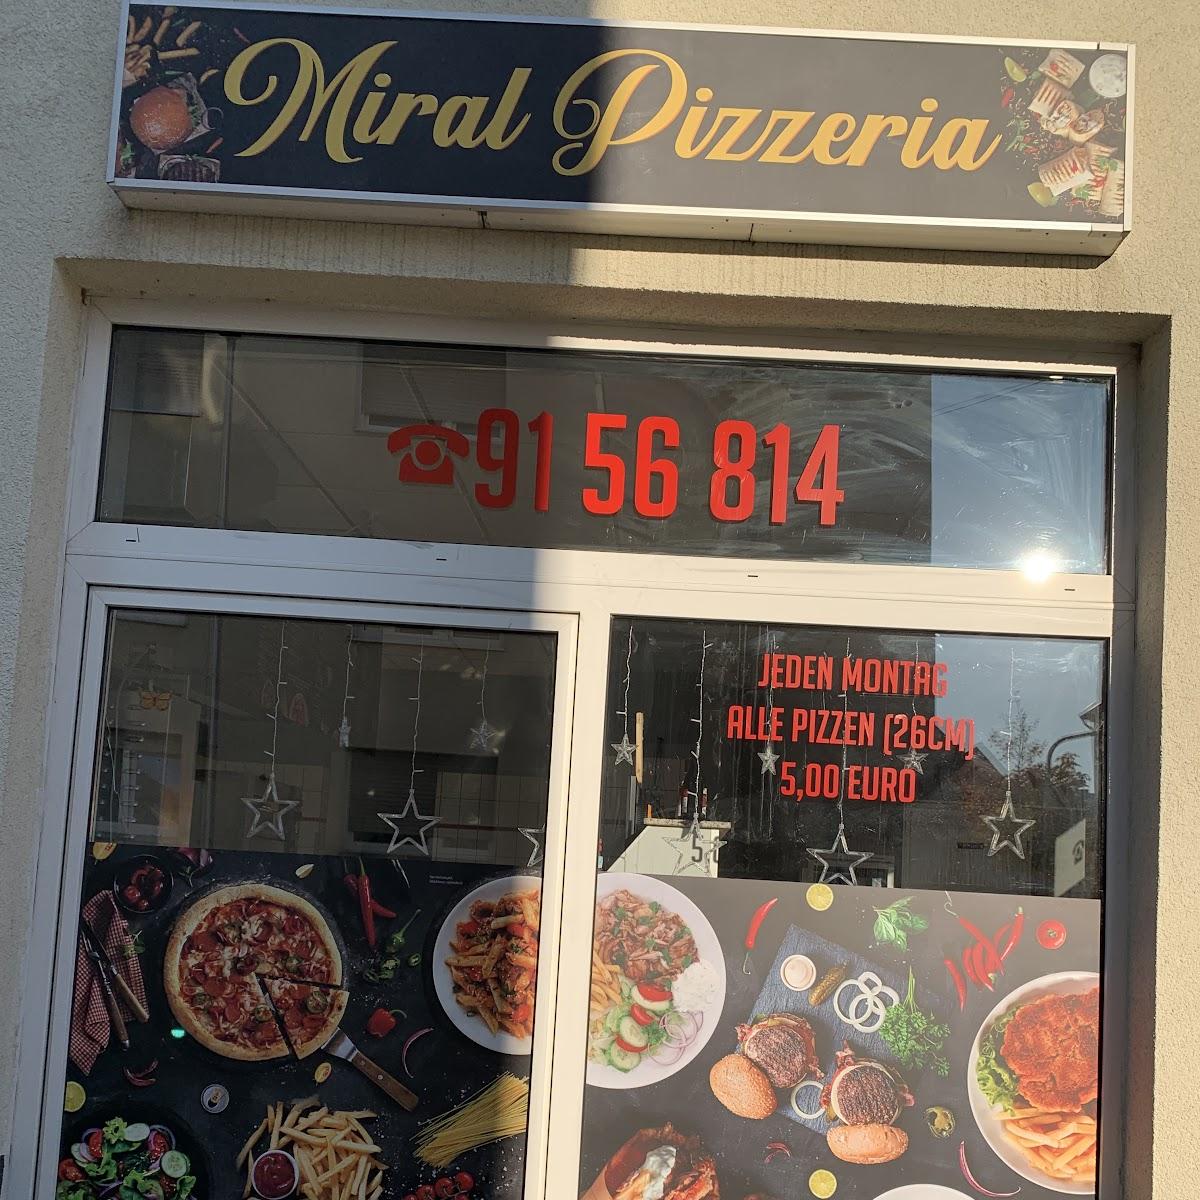 Restaurant "Miral pizzeria" in Hamm